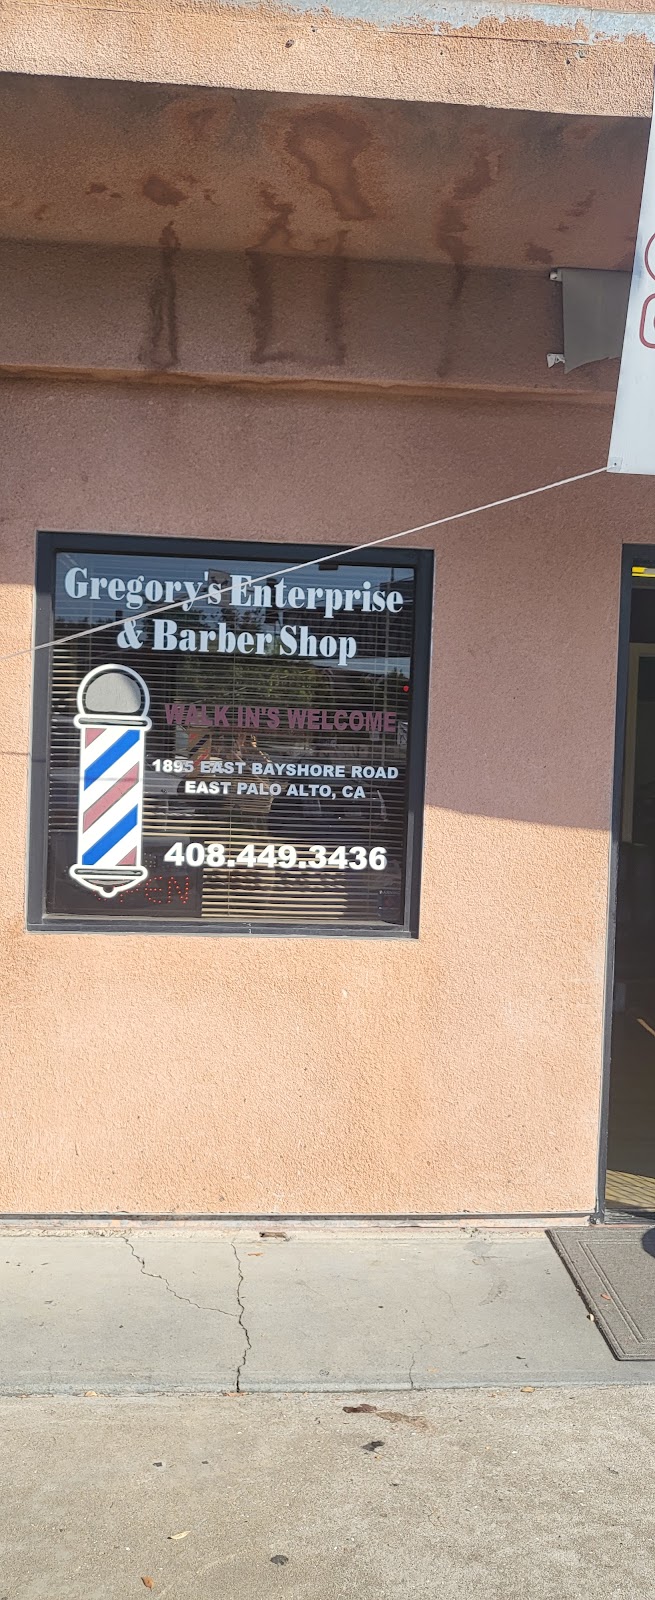 Gregorys Enterprise & Barbershop | 1895 E Bayshore Rd, East Palo Alto, CA 94303 | Phone: (408) 449-3436